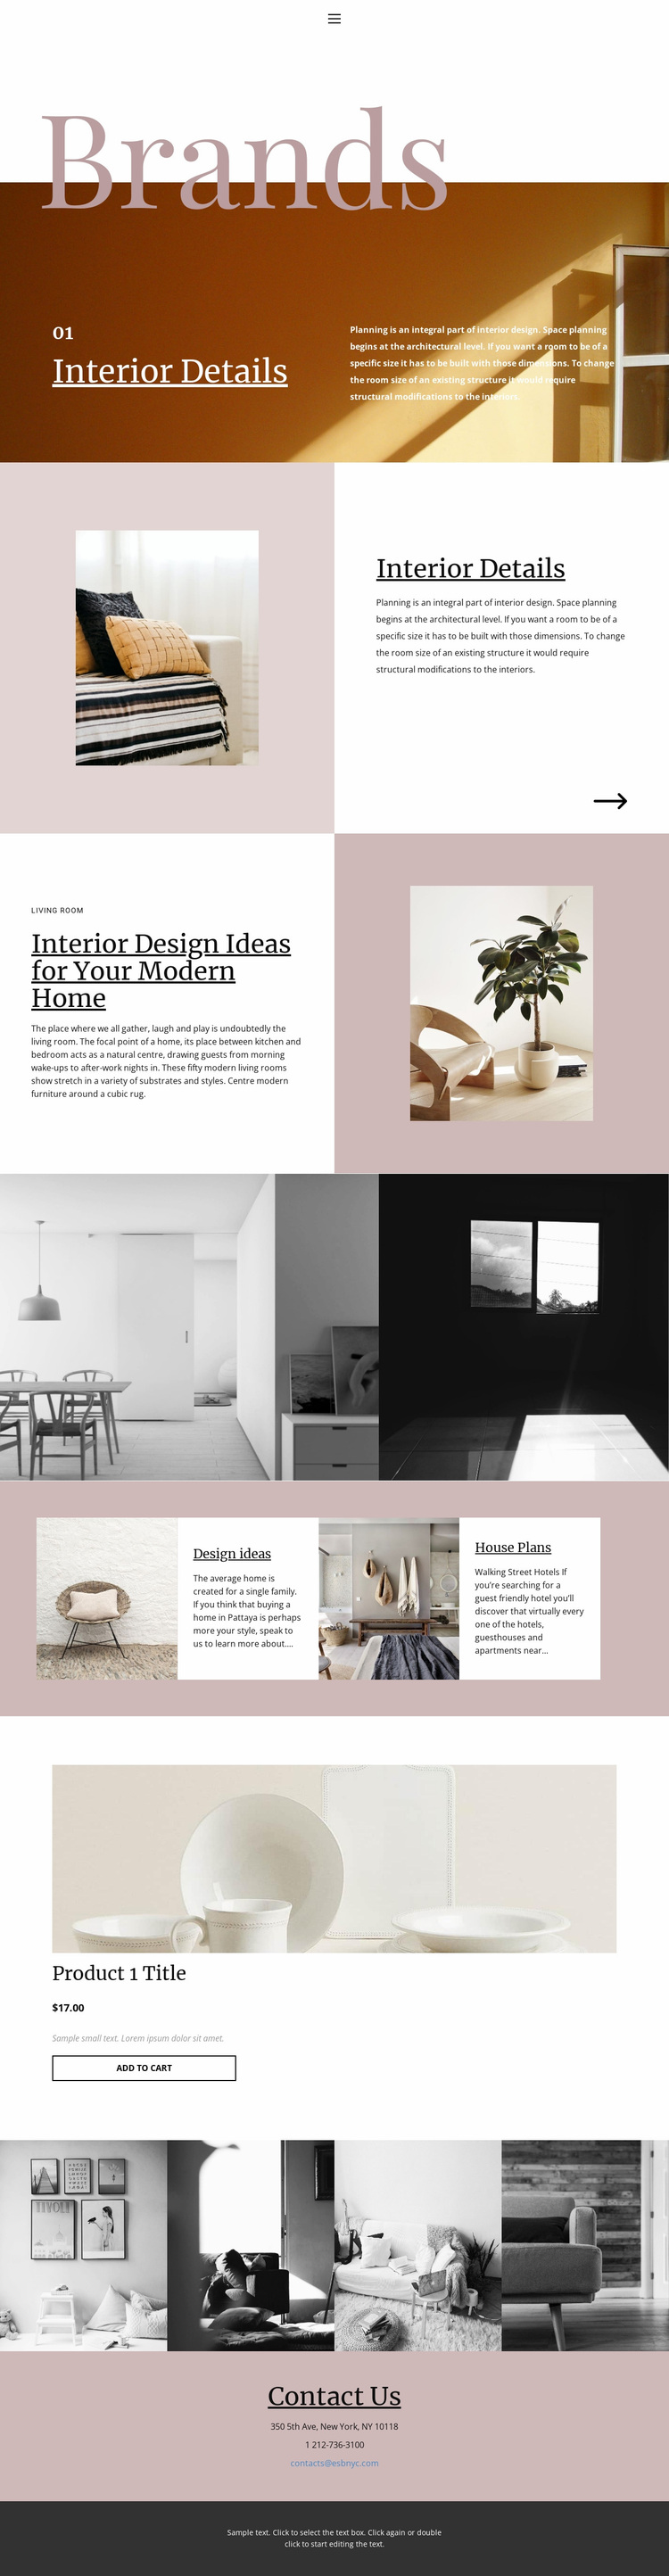 I am an interior designer Website Design